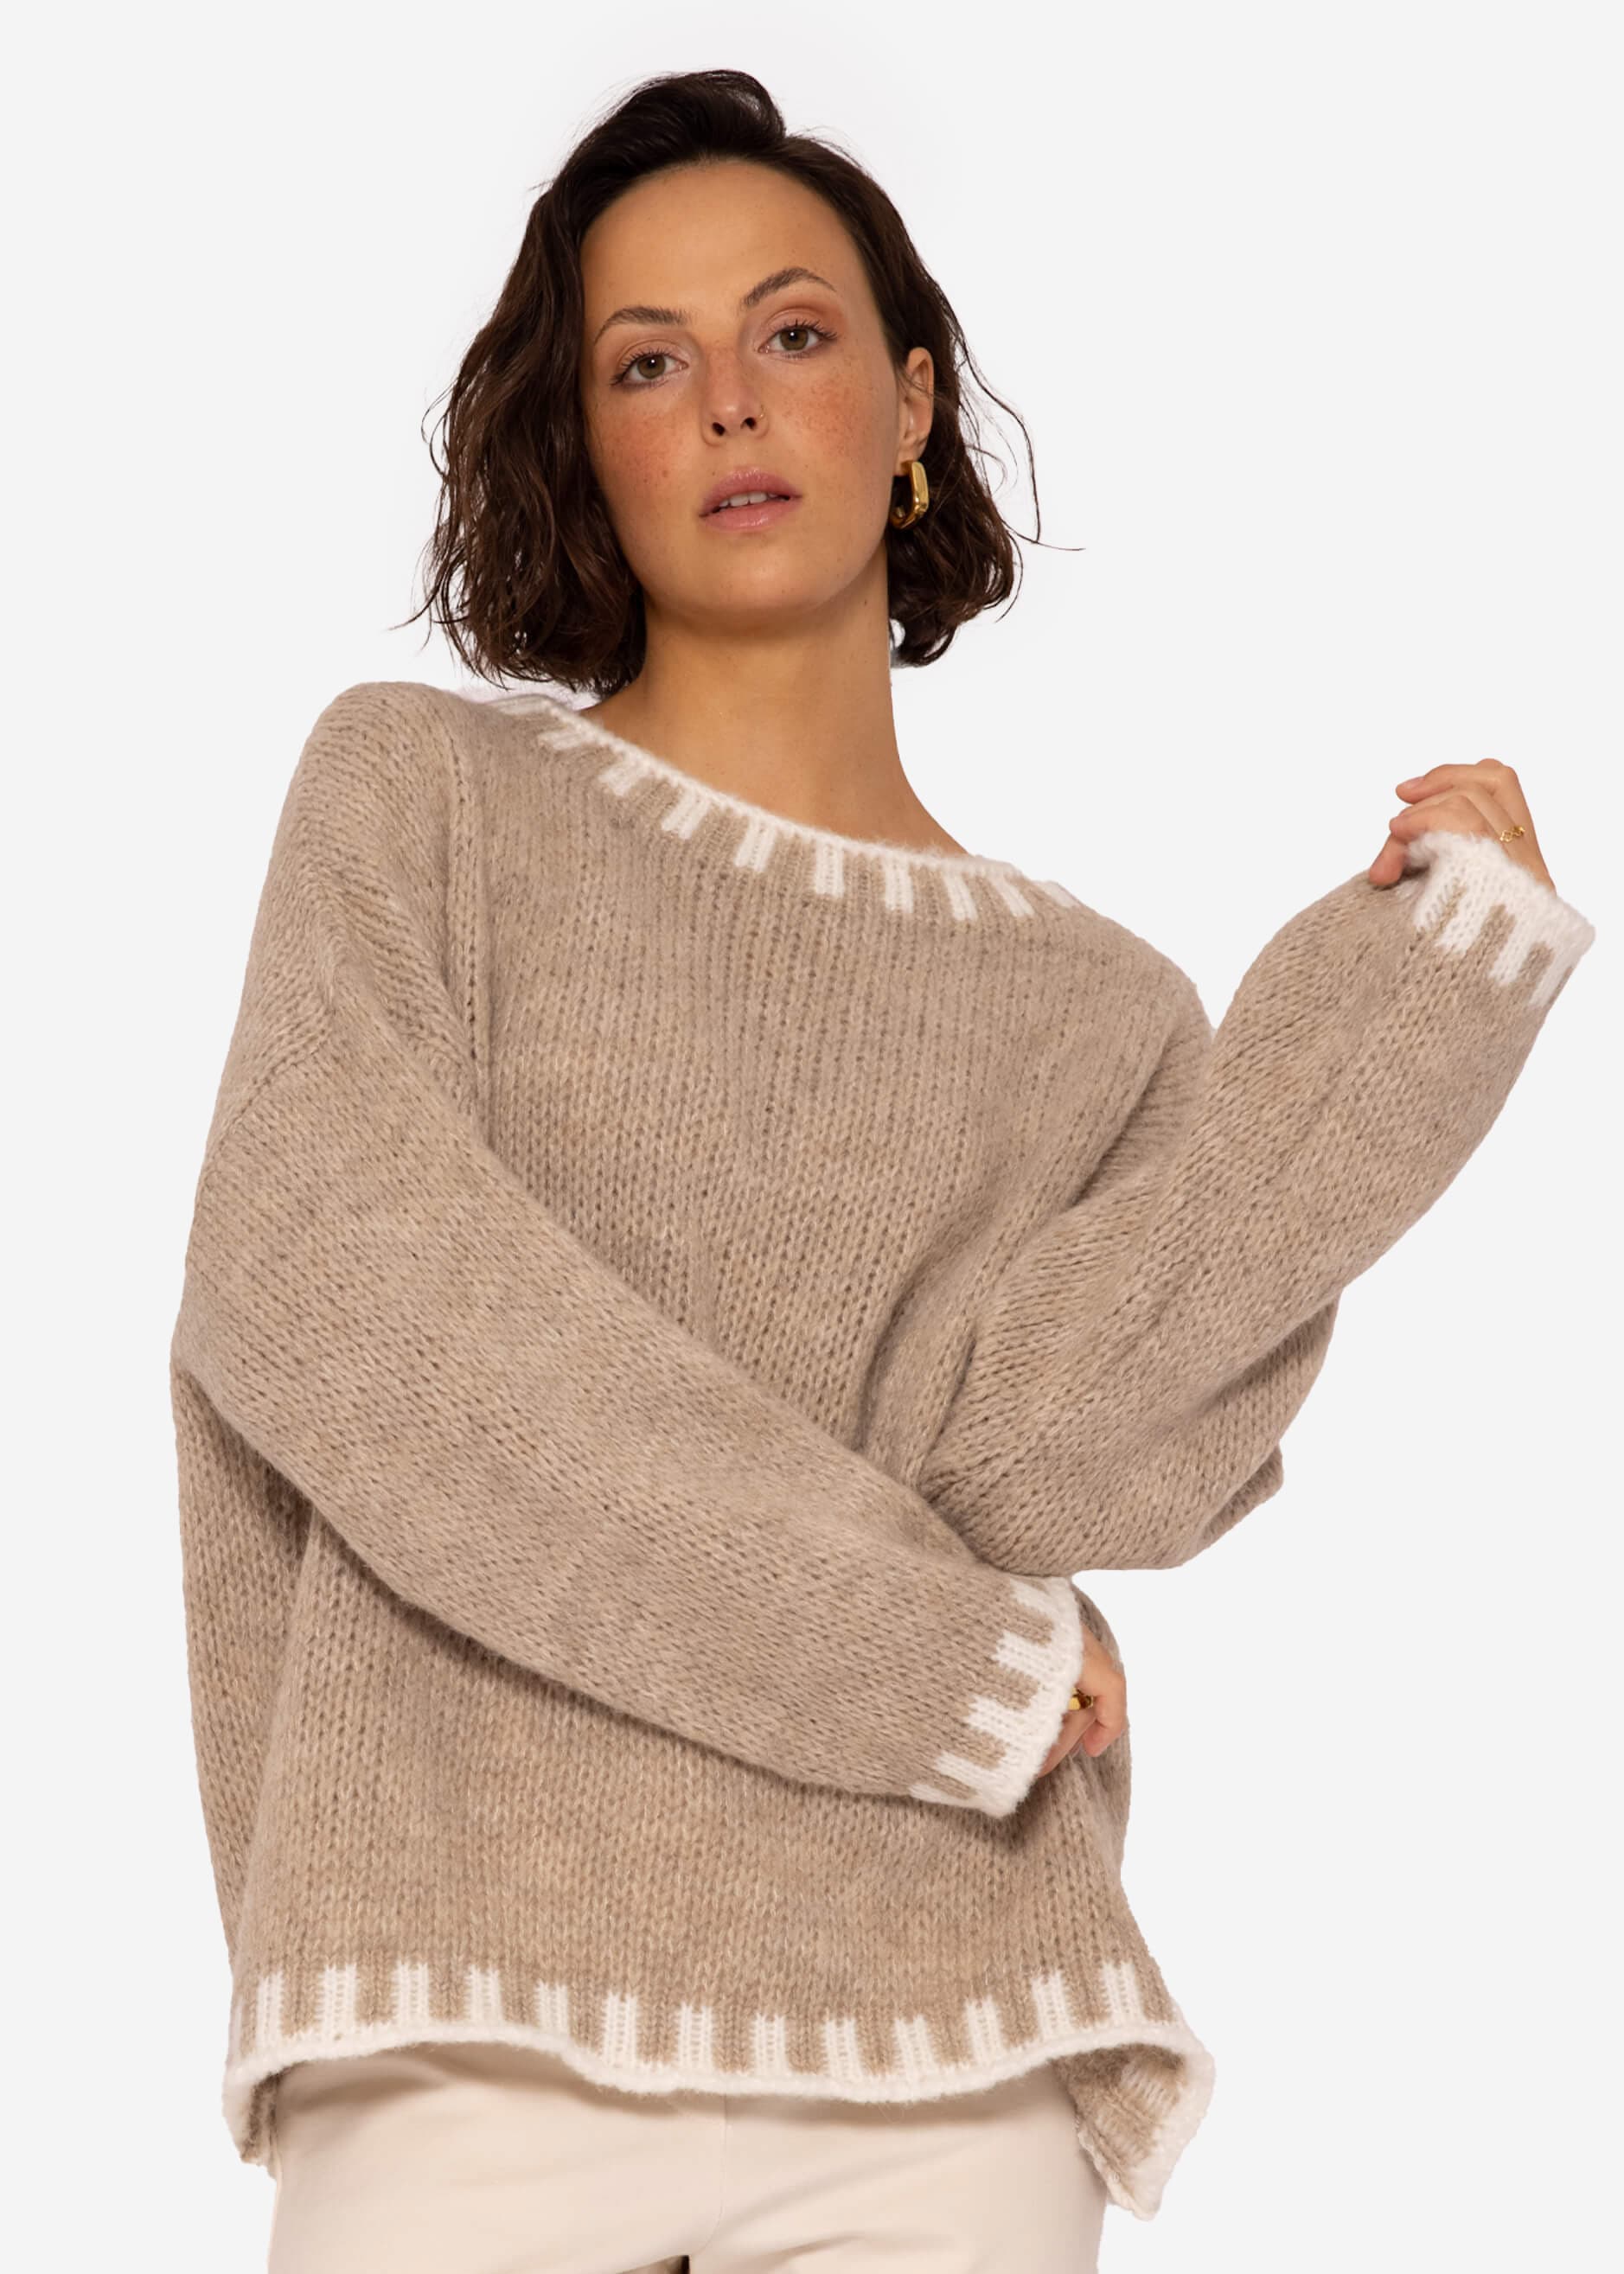 Pullover mit offwhite Details, beige | Pullover | Bekleidung | SASSYCLASSY